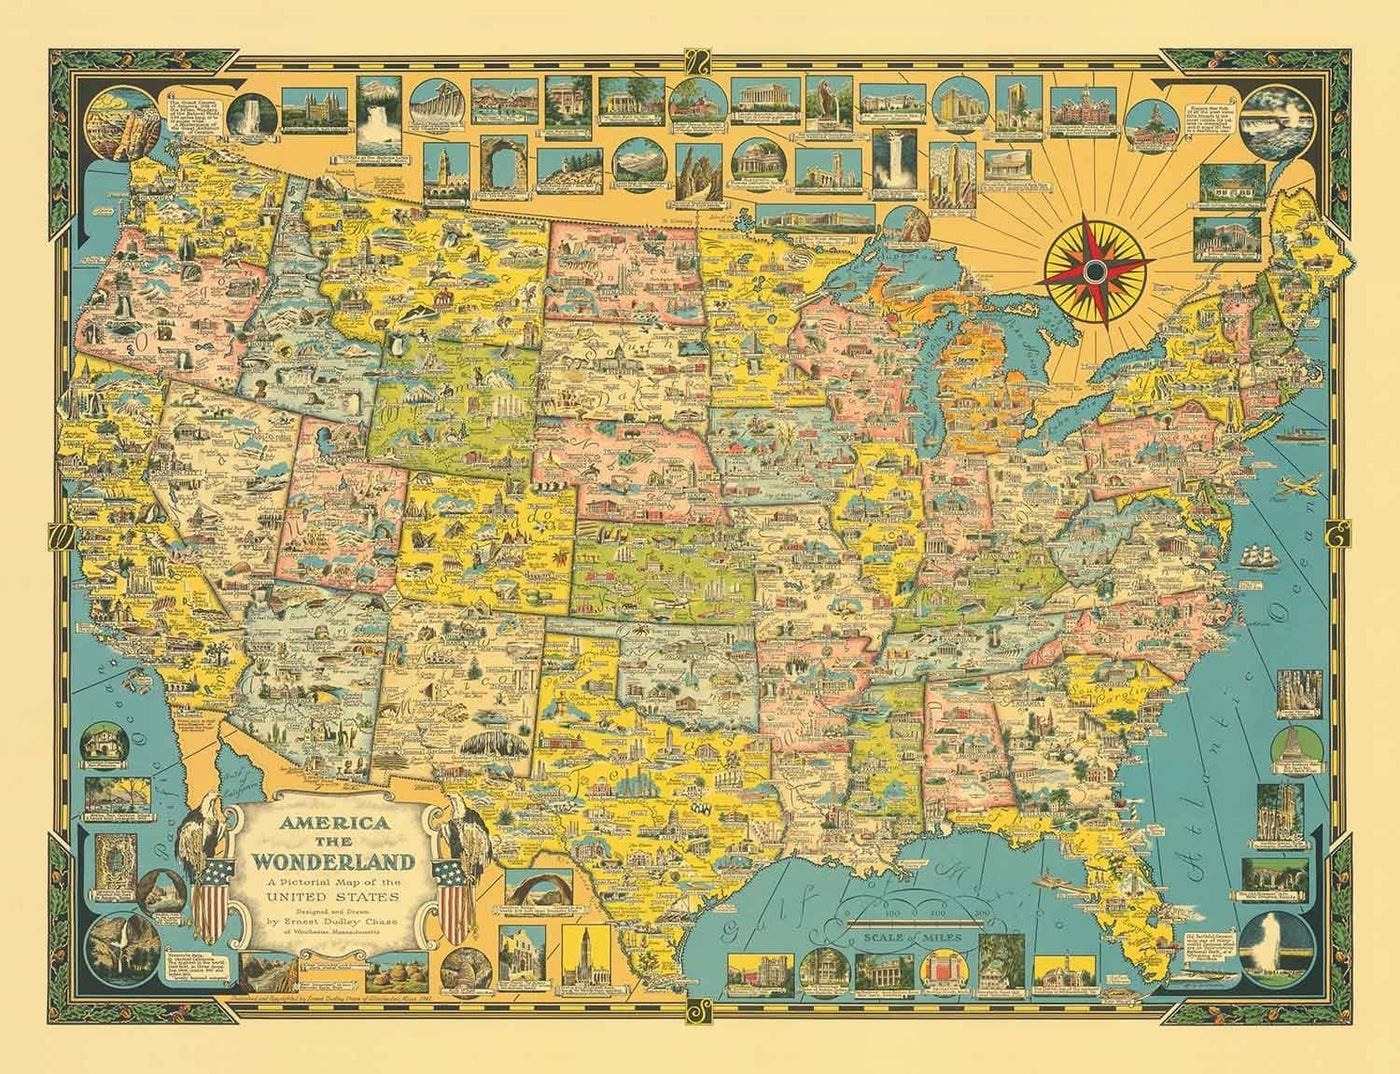 Old Pictorial Map of USA, 1941 von E. Chase - "America the Wonderland" - Illustrierte Wahrzeichen, natürliche Wunder